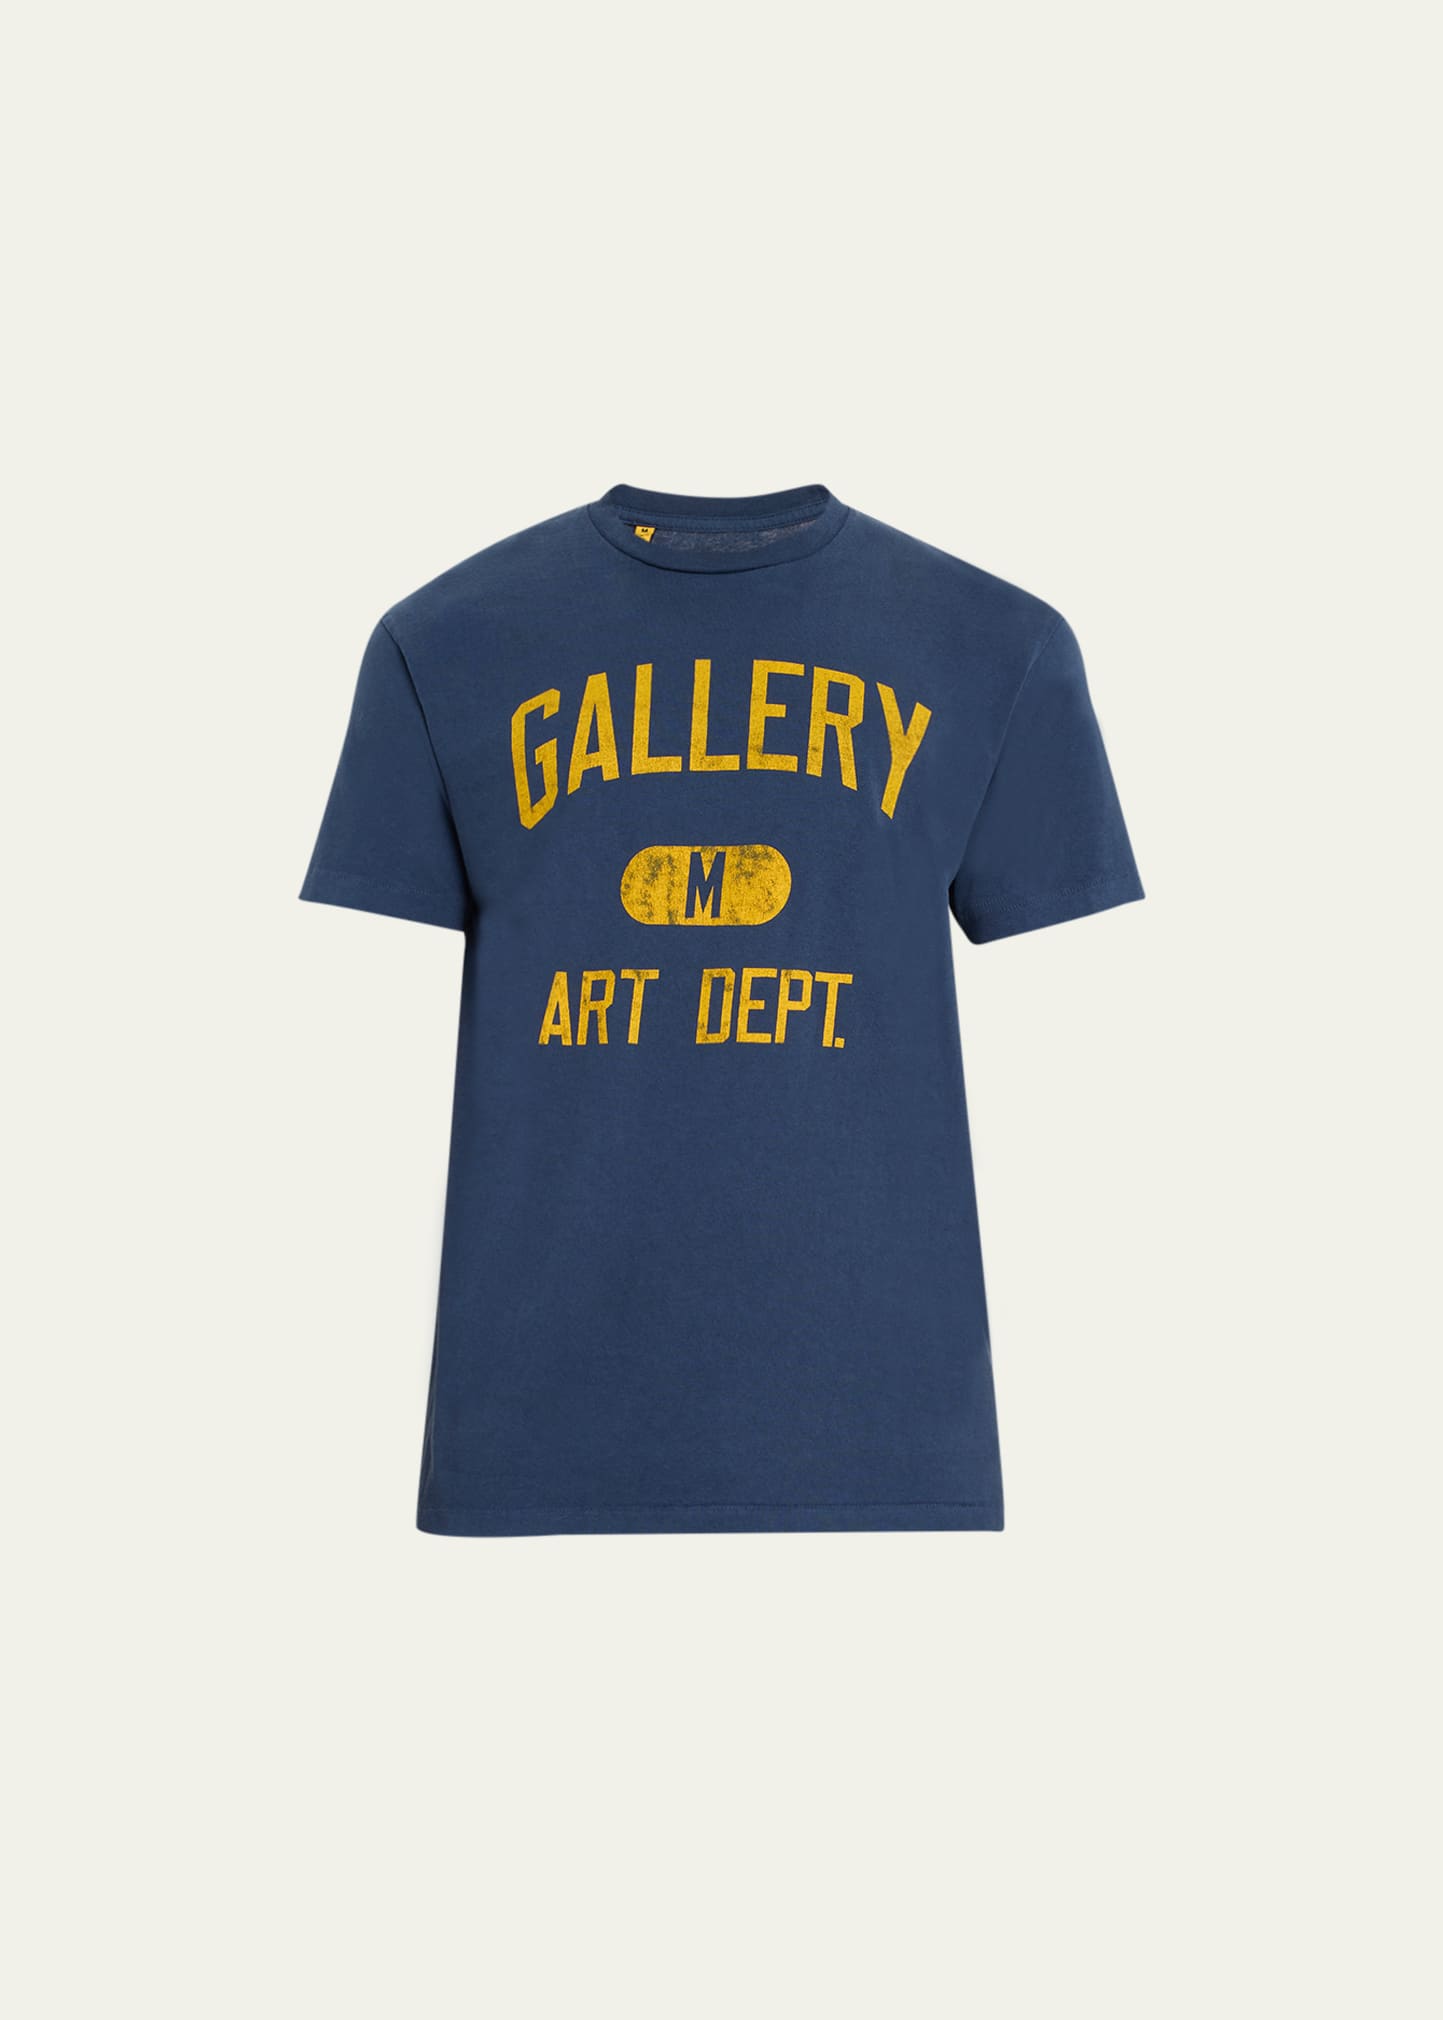 Gallery Department Men's Jersey Art Dept. T-shirt In Deep Navy